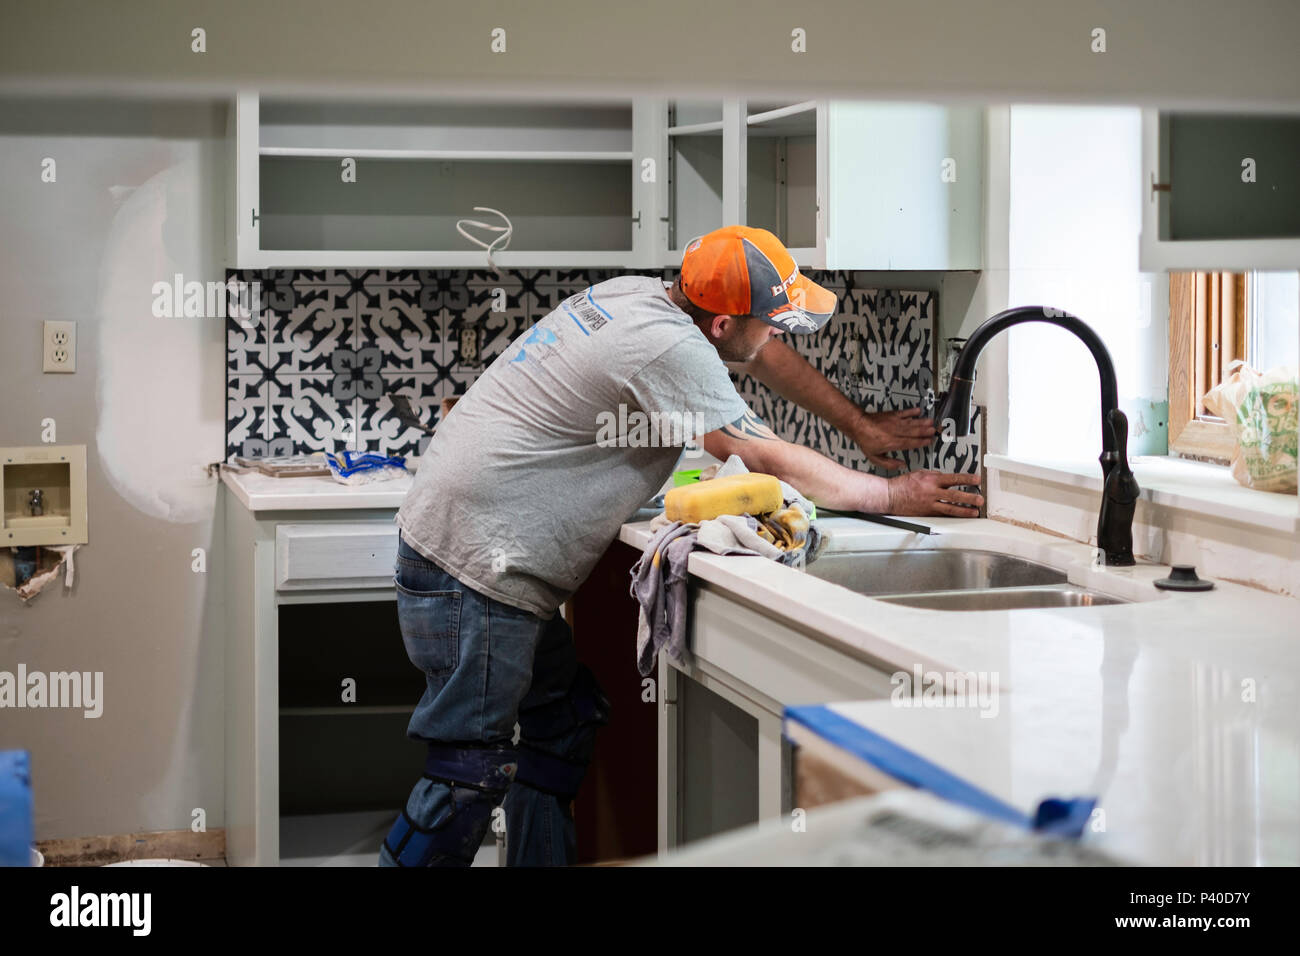 Kitchen Renovation Series: Installing a Tile Back Splash